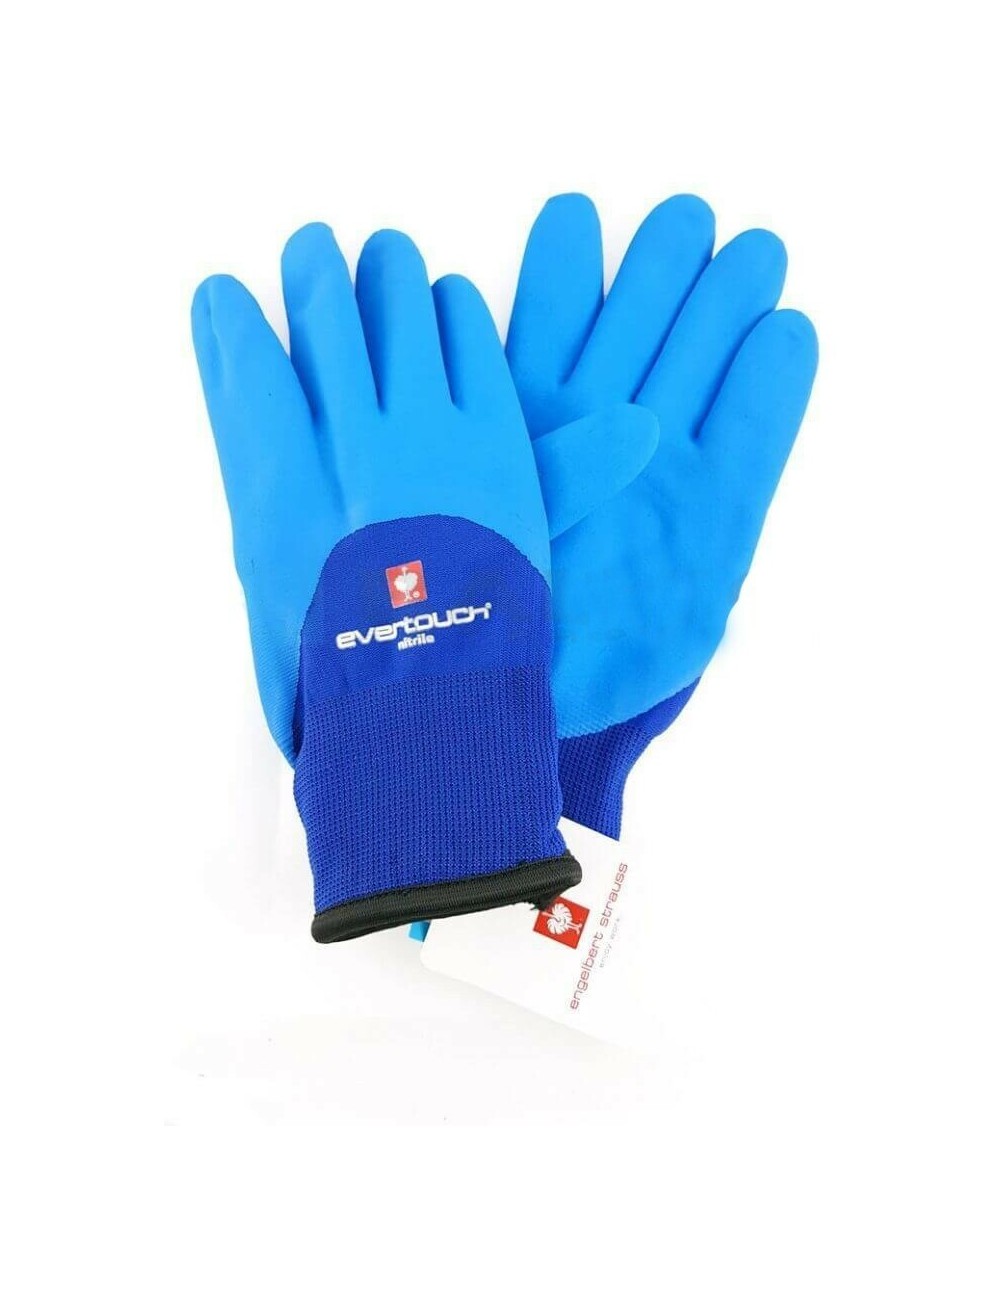 Engelbert Strauss Evertouch insulated gloves